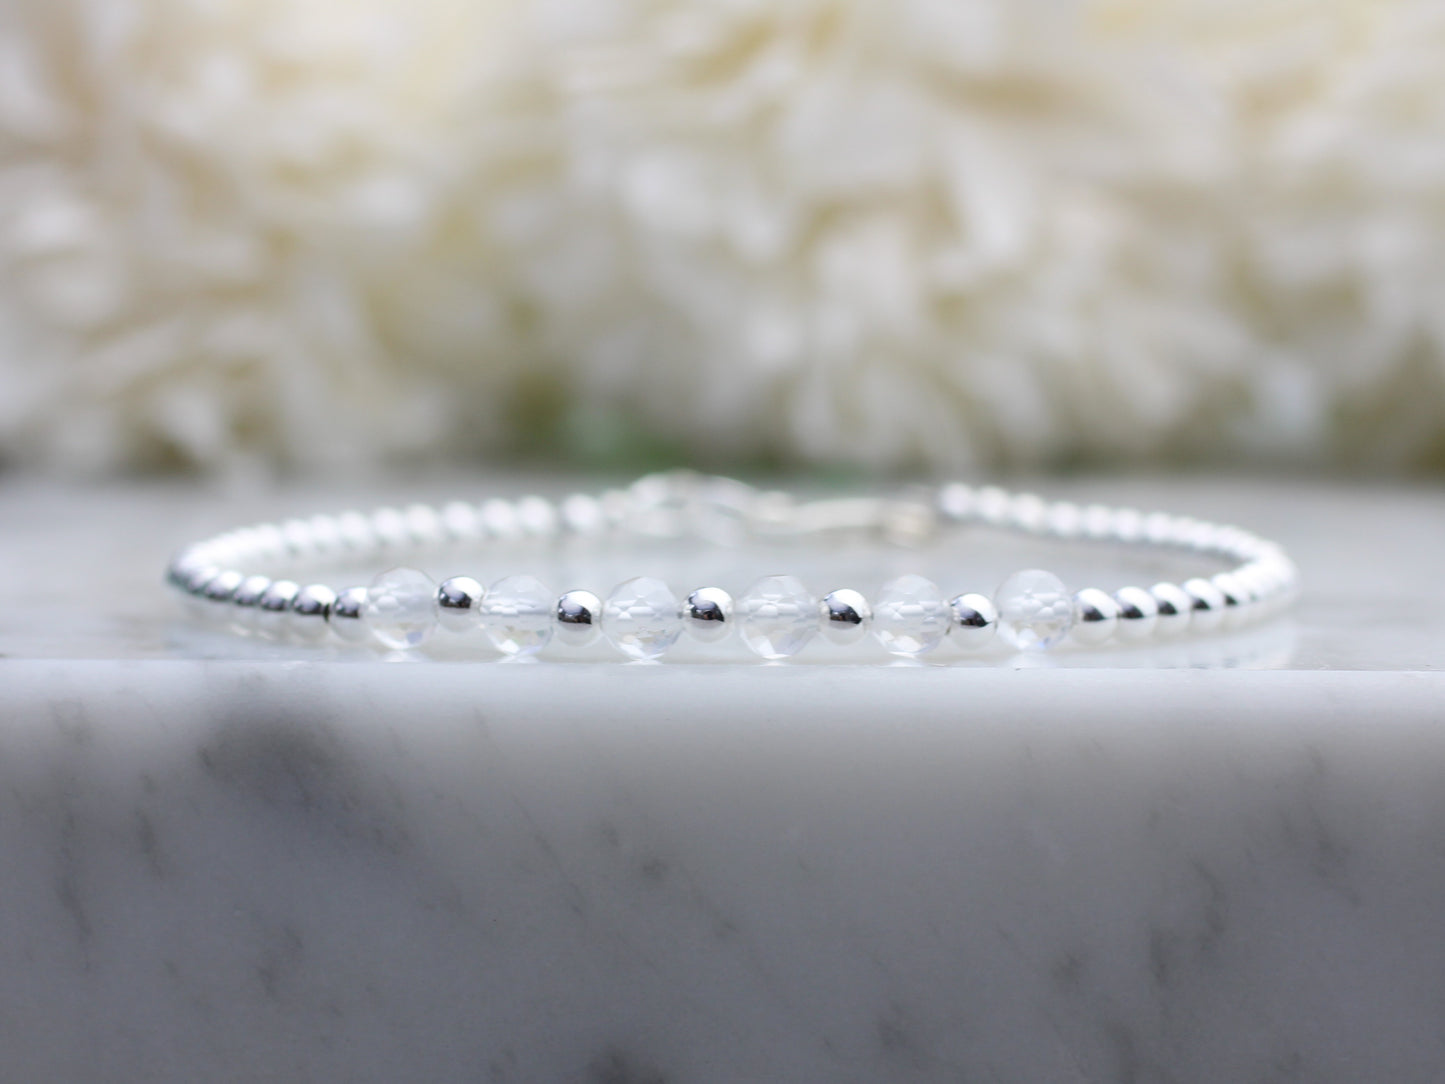 Quartz milestone bracelet in sterling silver.